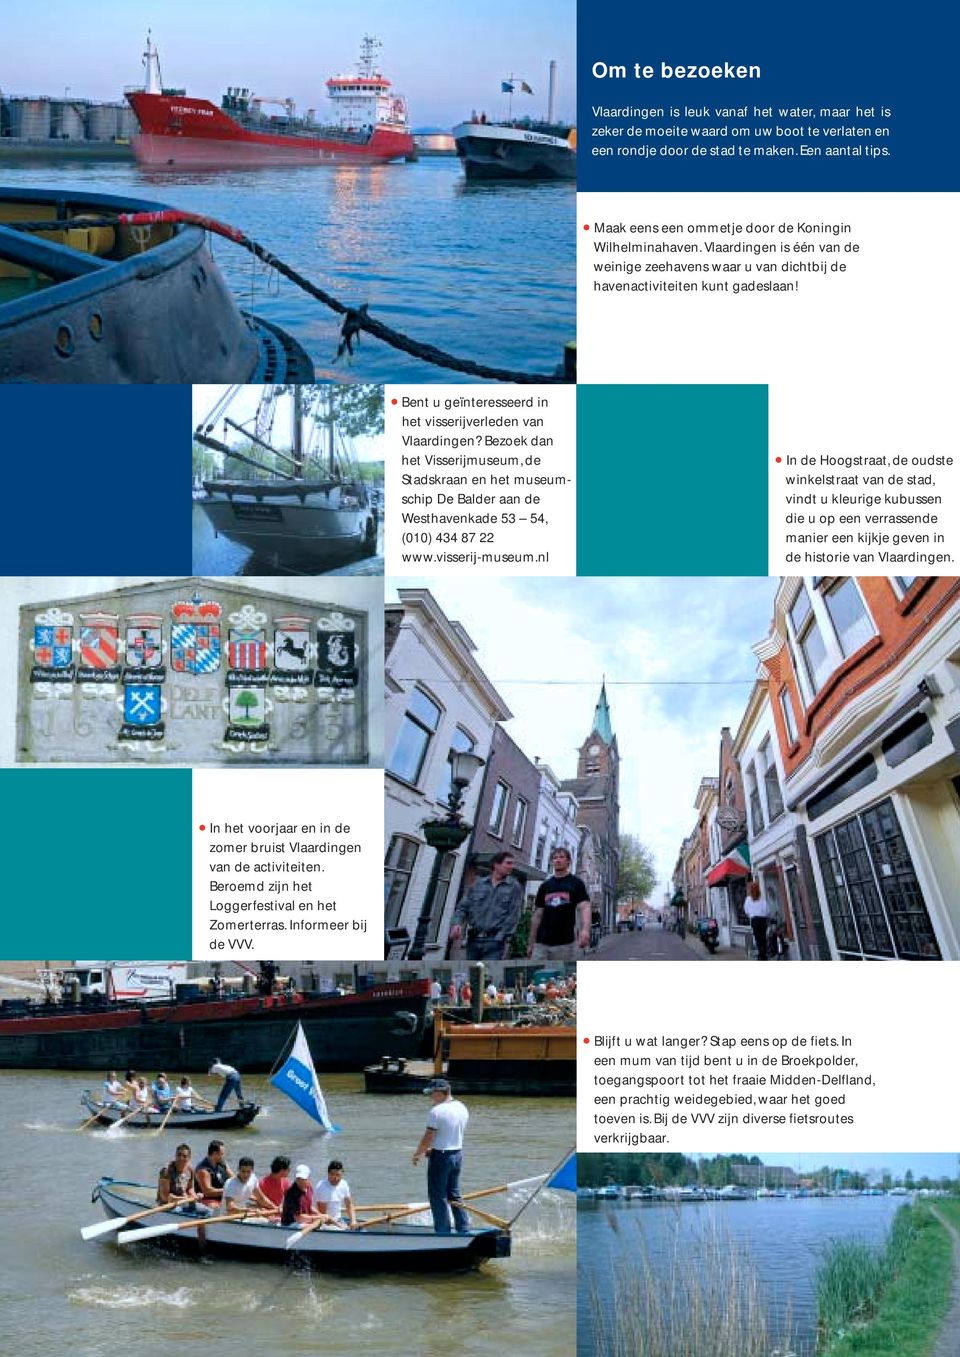 Bent u geïnteresseerd in het visserijverleden van Vlaardingen? Bezoek dan het Visserijmuseum, de Stadskraan en het museumschip De Balder aan de Westhavenkade 53 54, (010) 434 87 22 www.